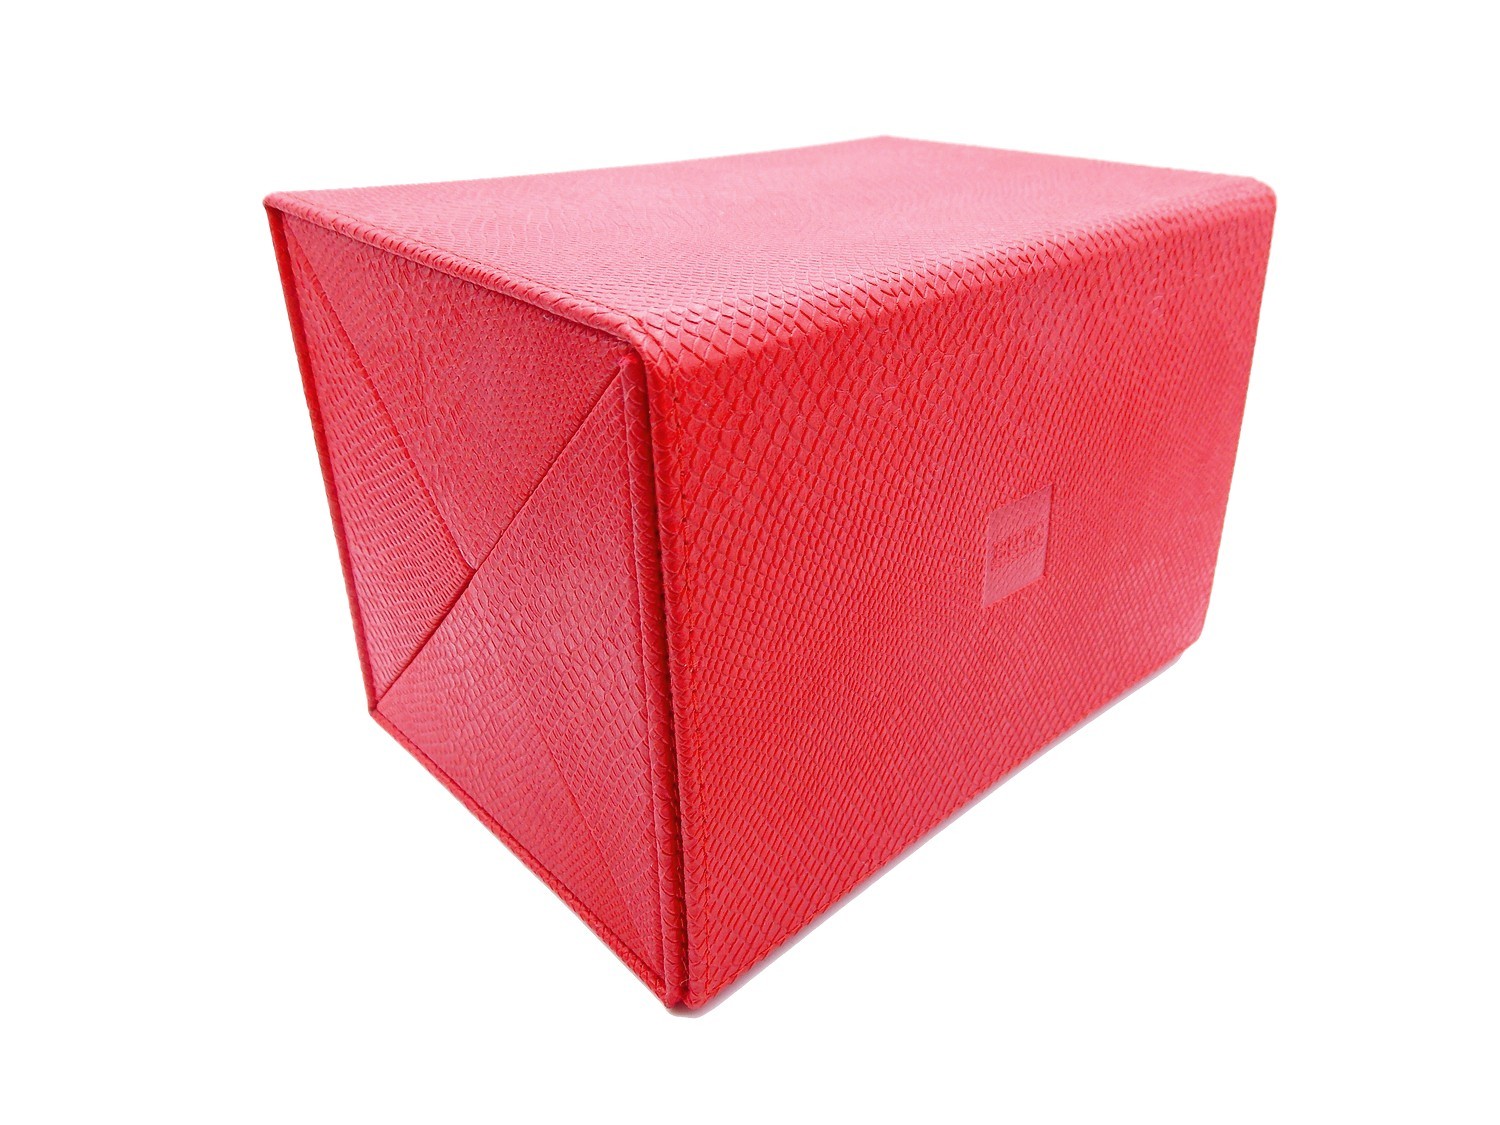 Мультифутляр BOX 4.110.20.10 мульти-футляр красный